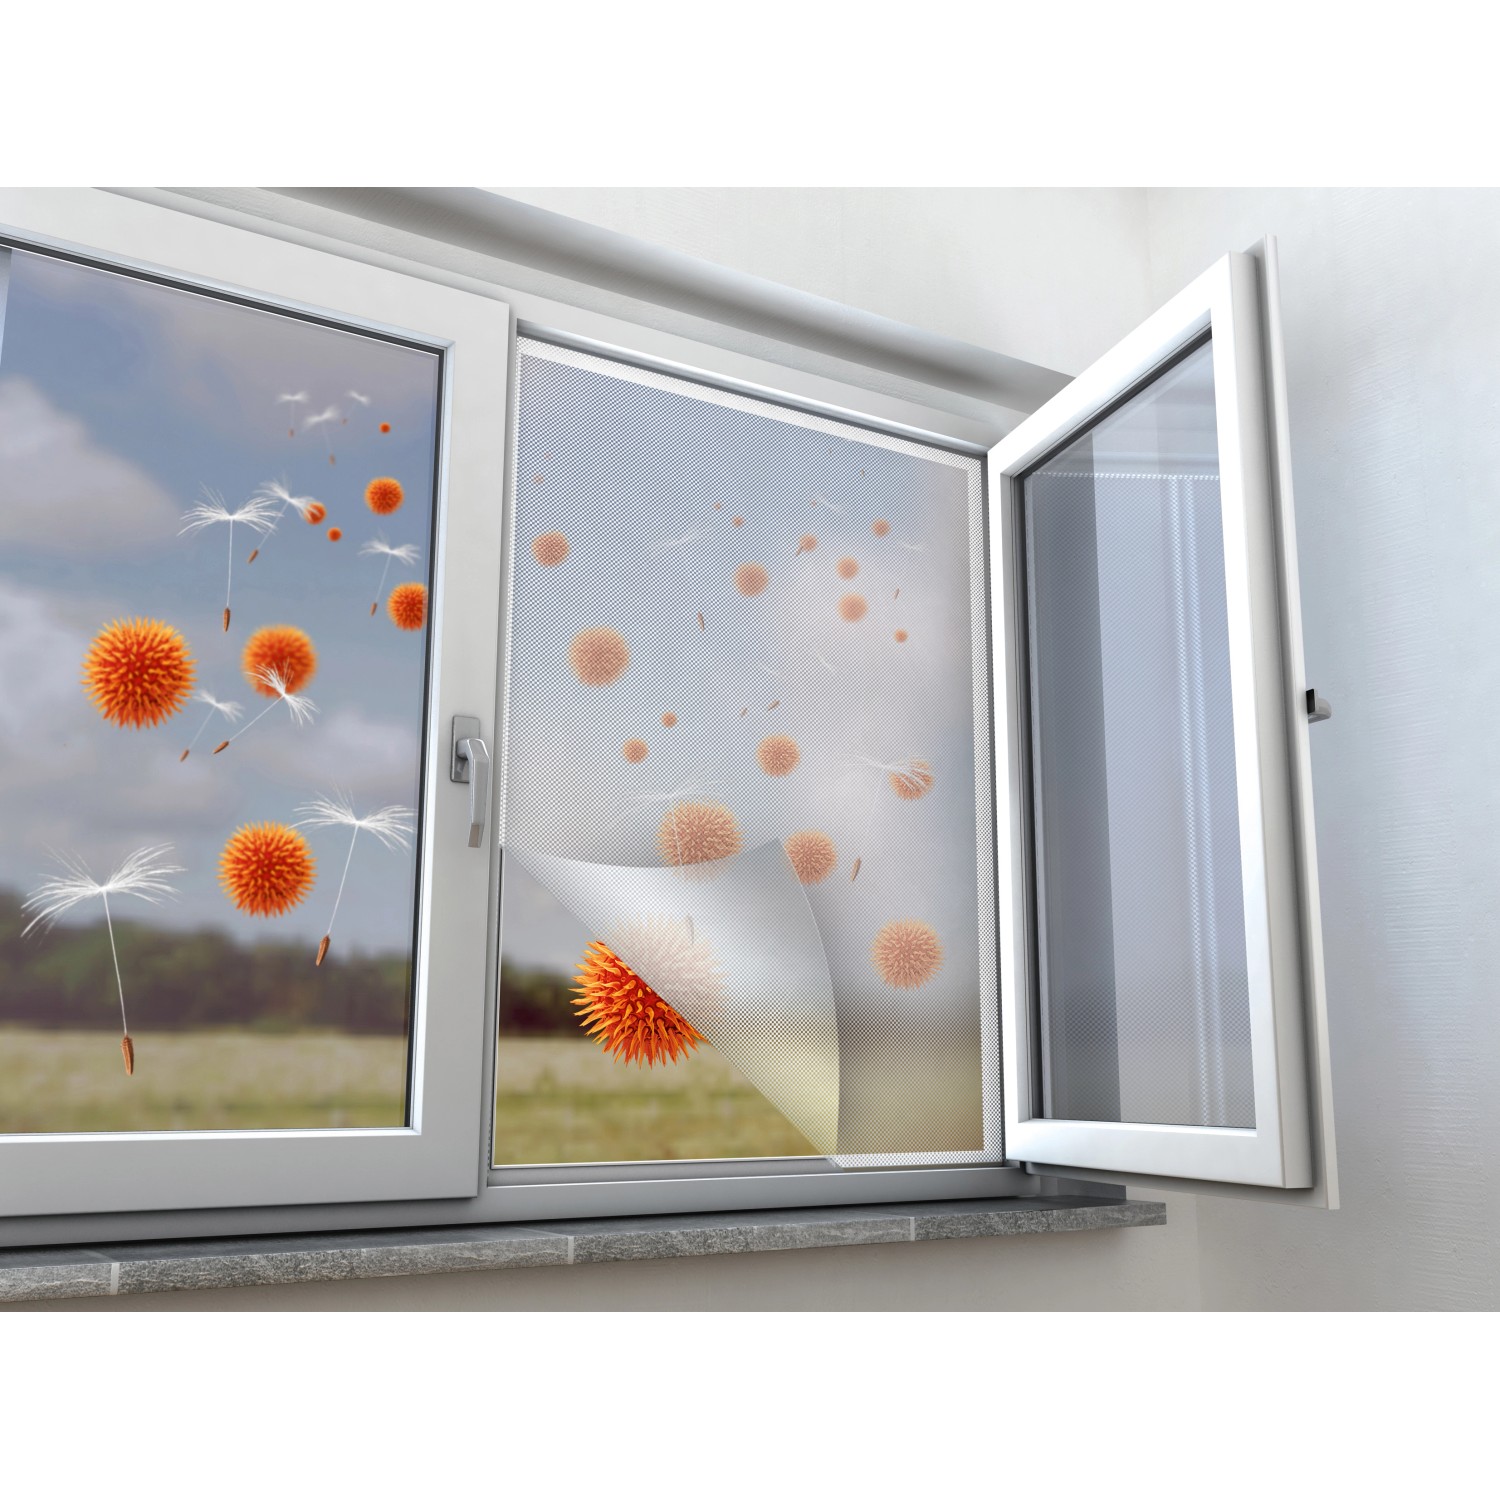 Pollenschutznetz Fenster Anthrazit 110 x 130 cm